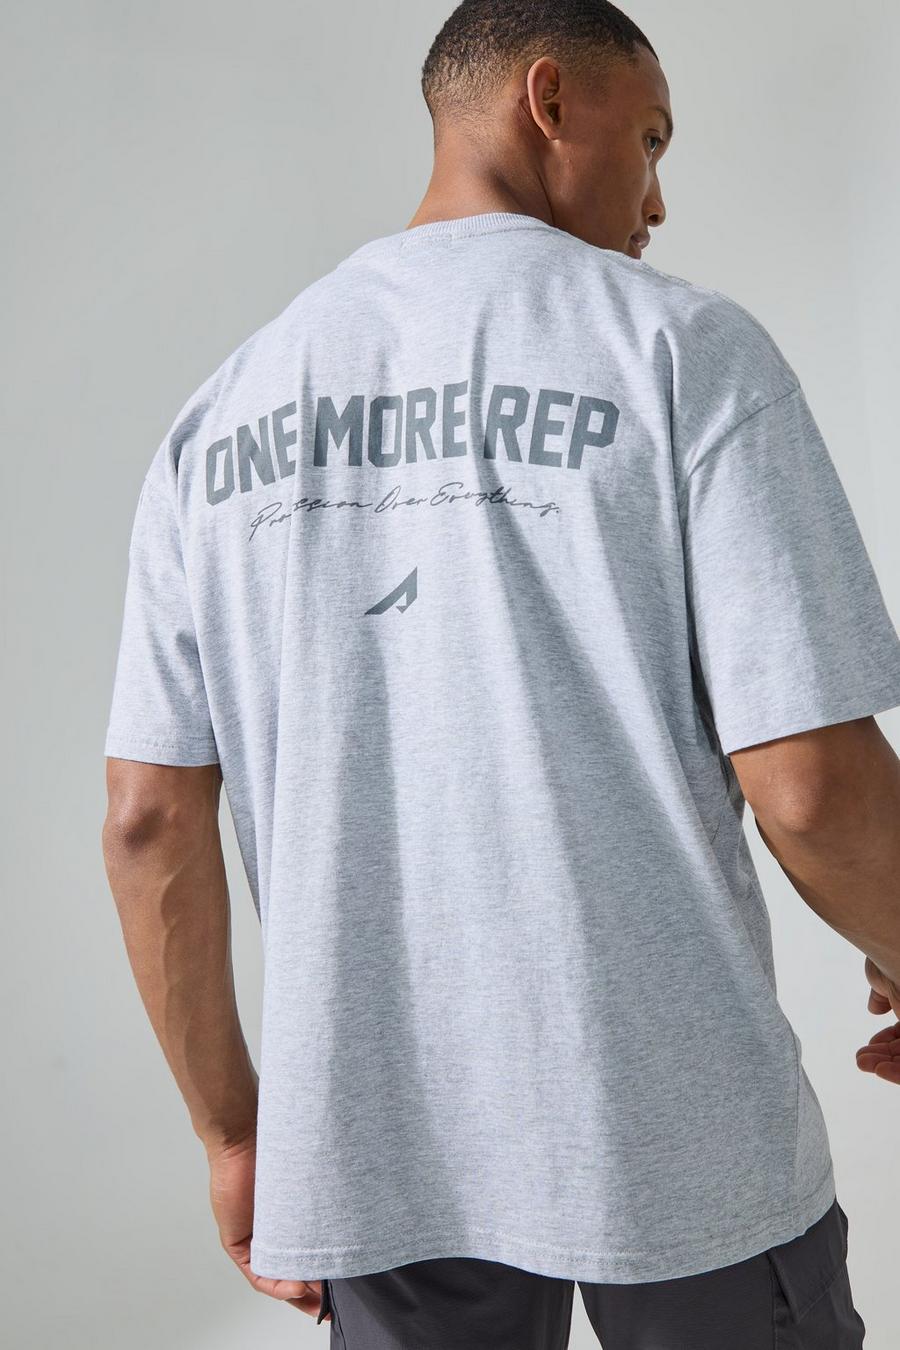 Camiseta MAN Active oversize con estampado One More Rep, Grey marl image number 1